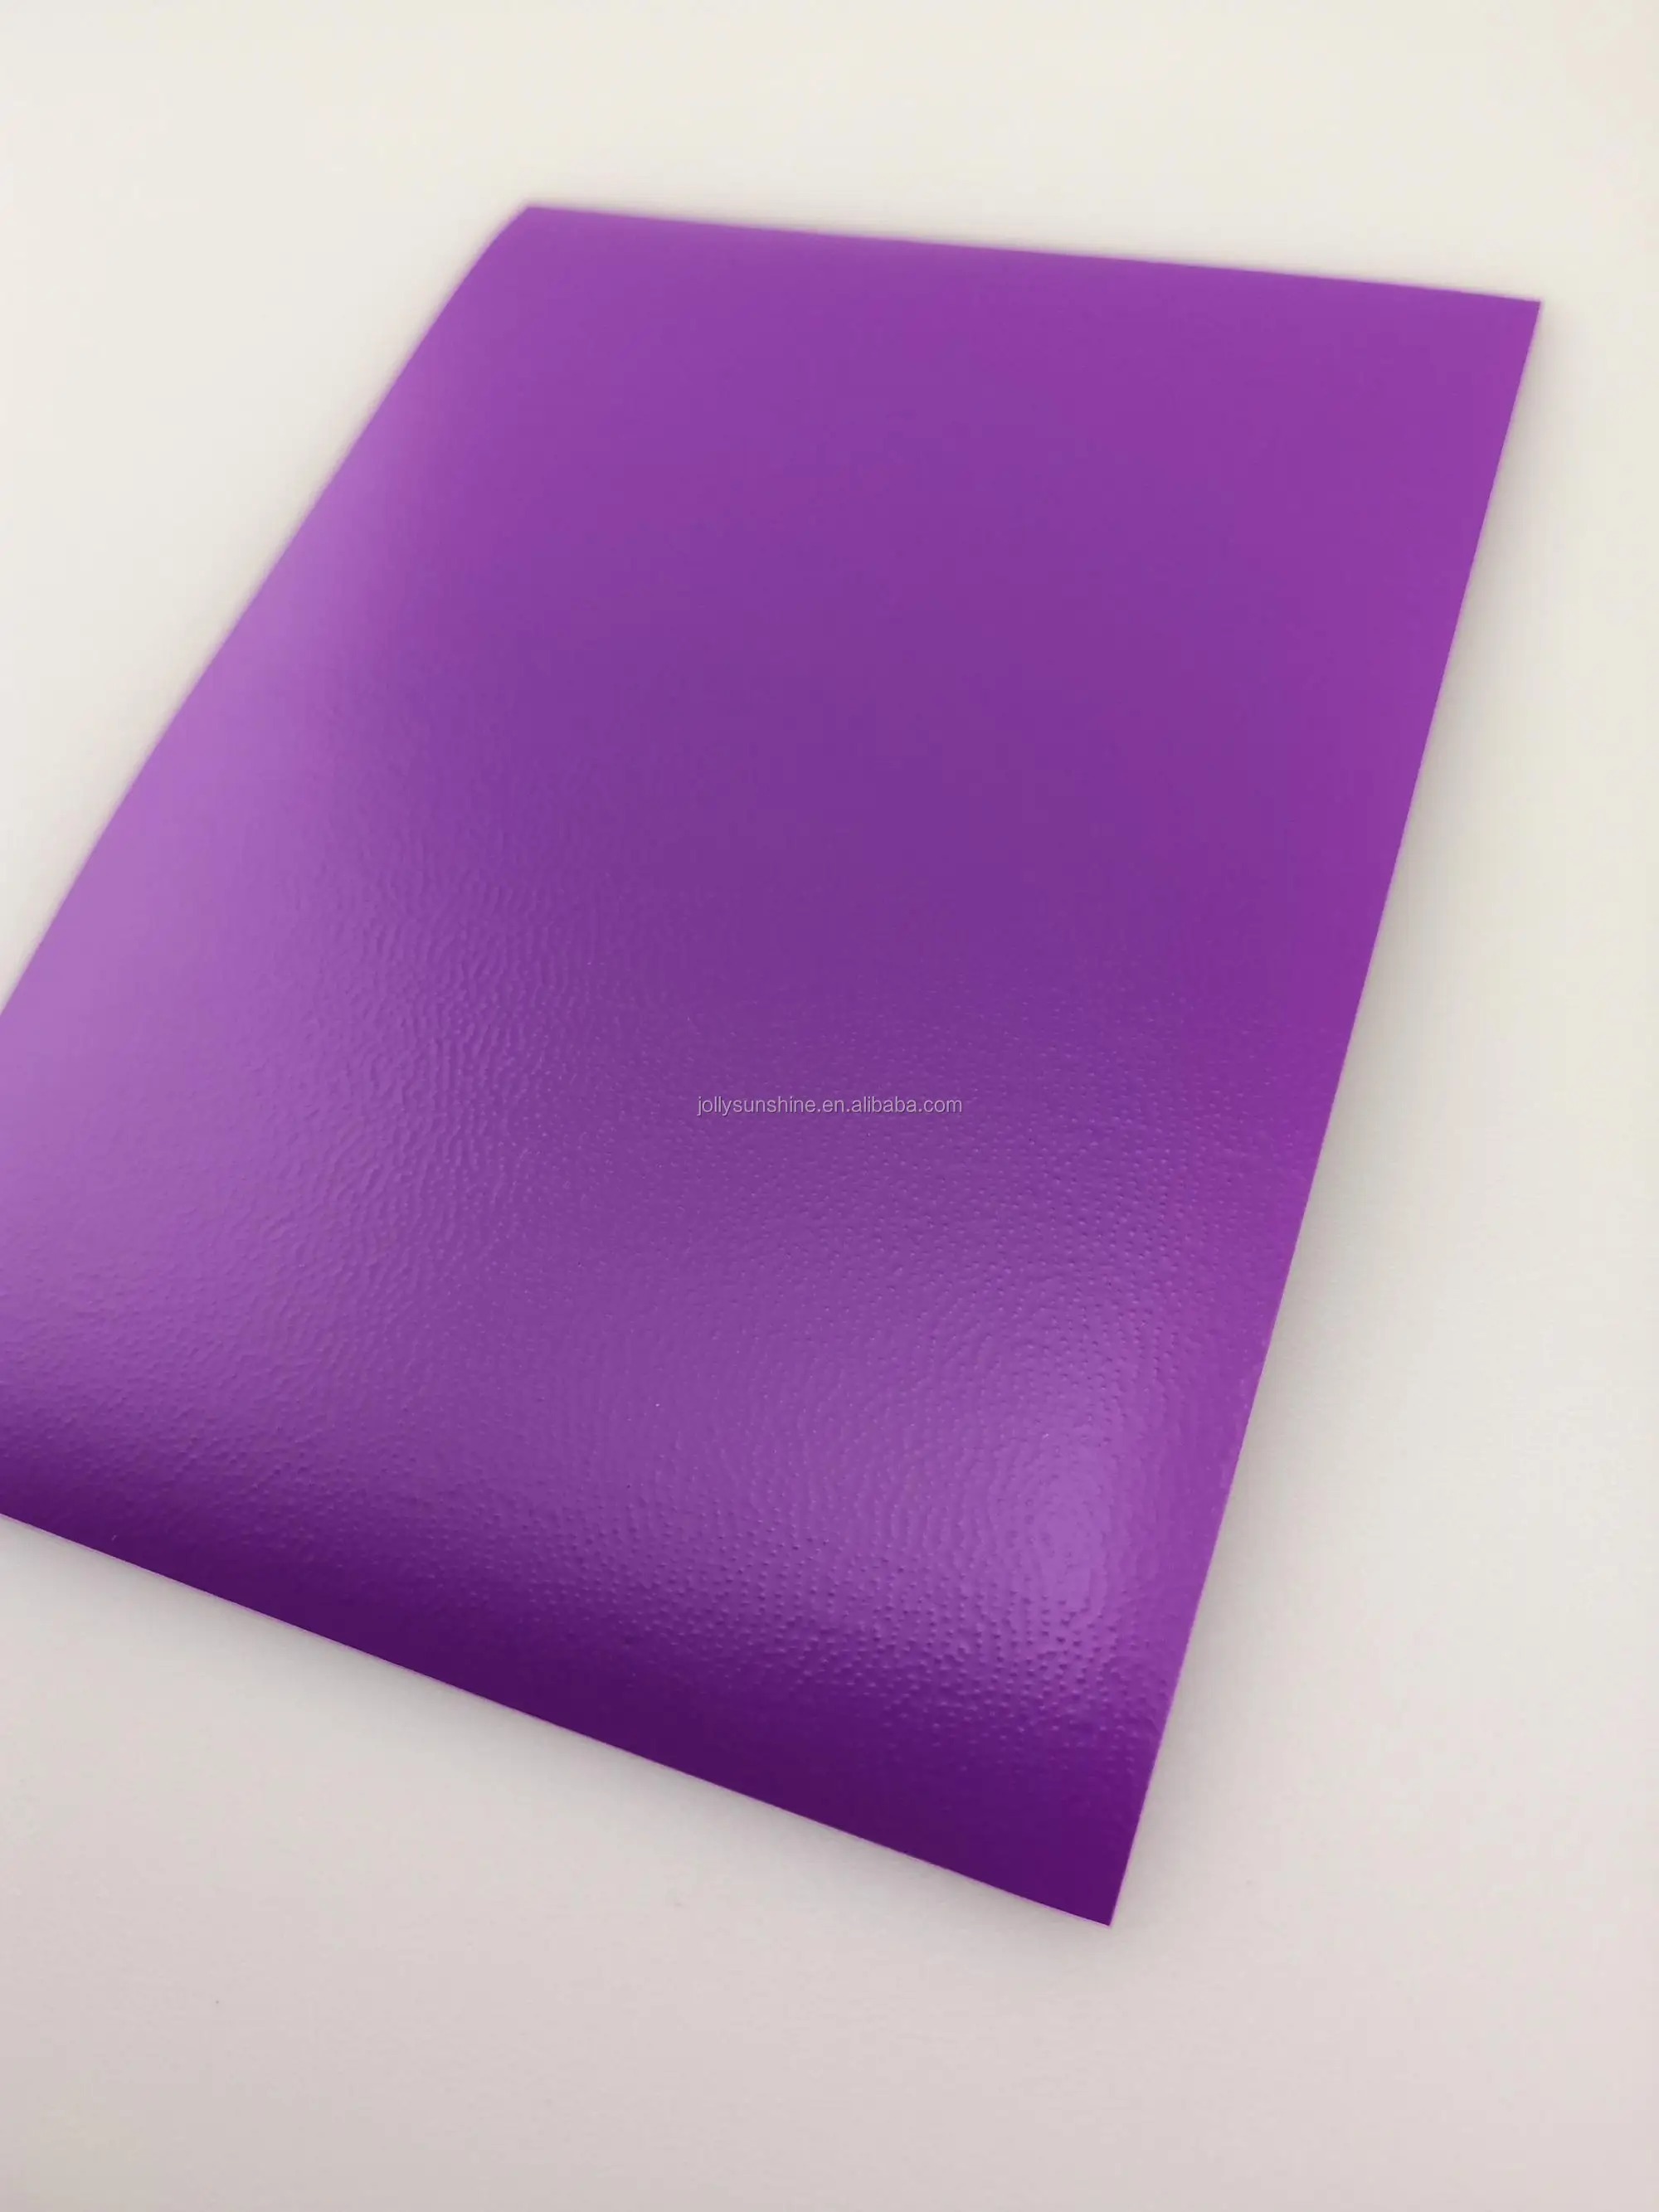 紫色哑光游戏卡袖子 yugioh 的保护